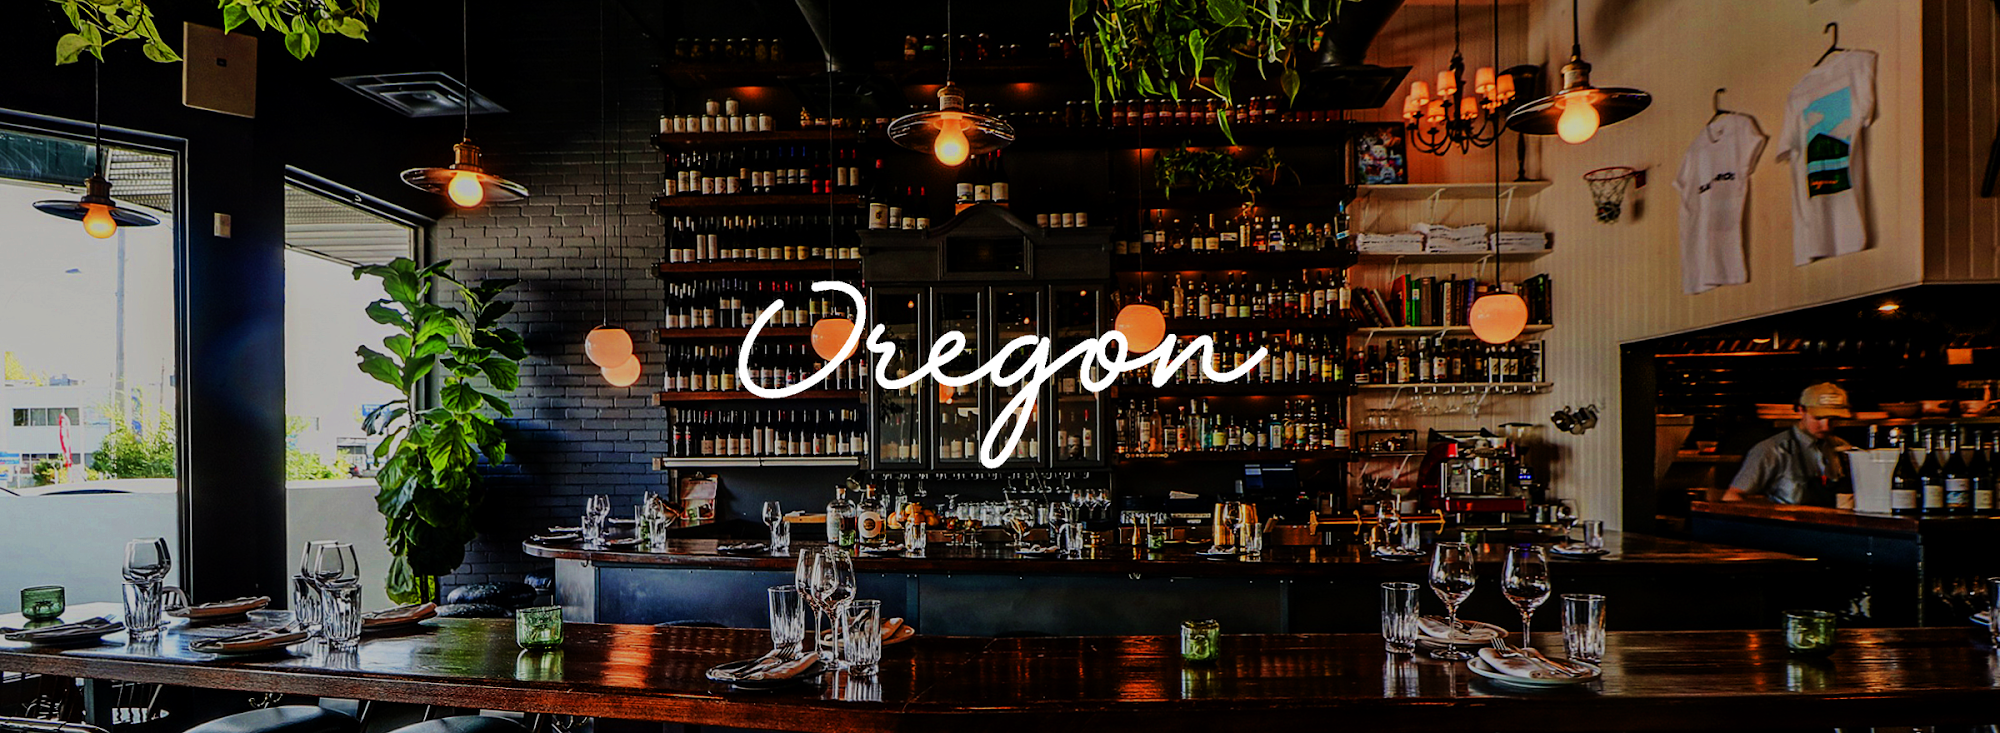 Oregon Bar à vin